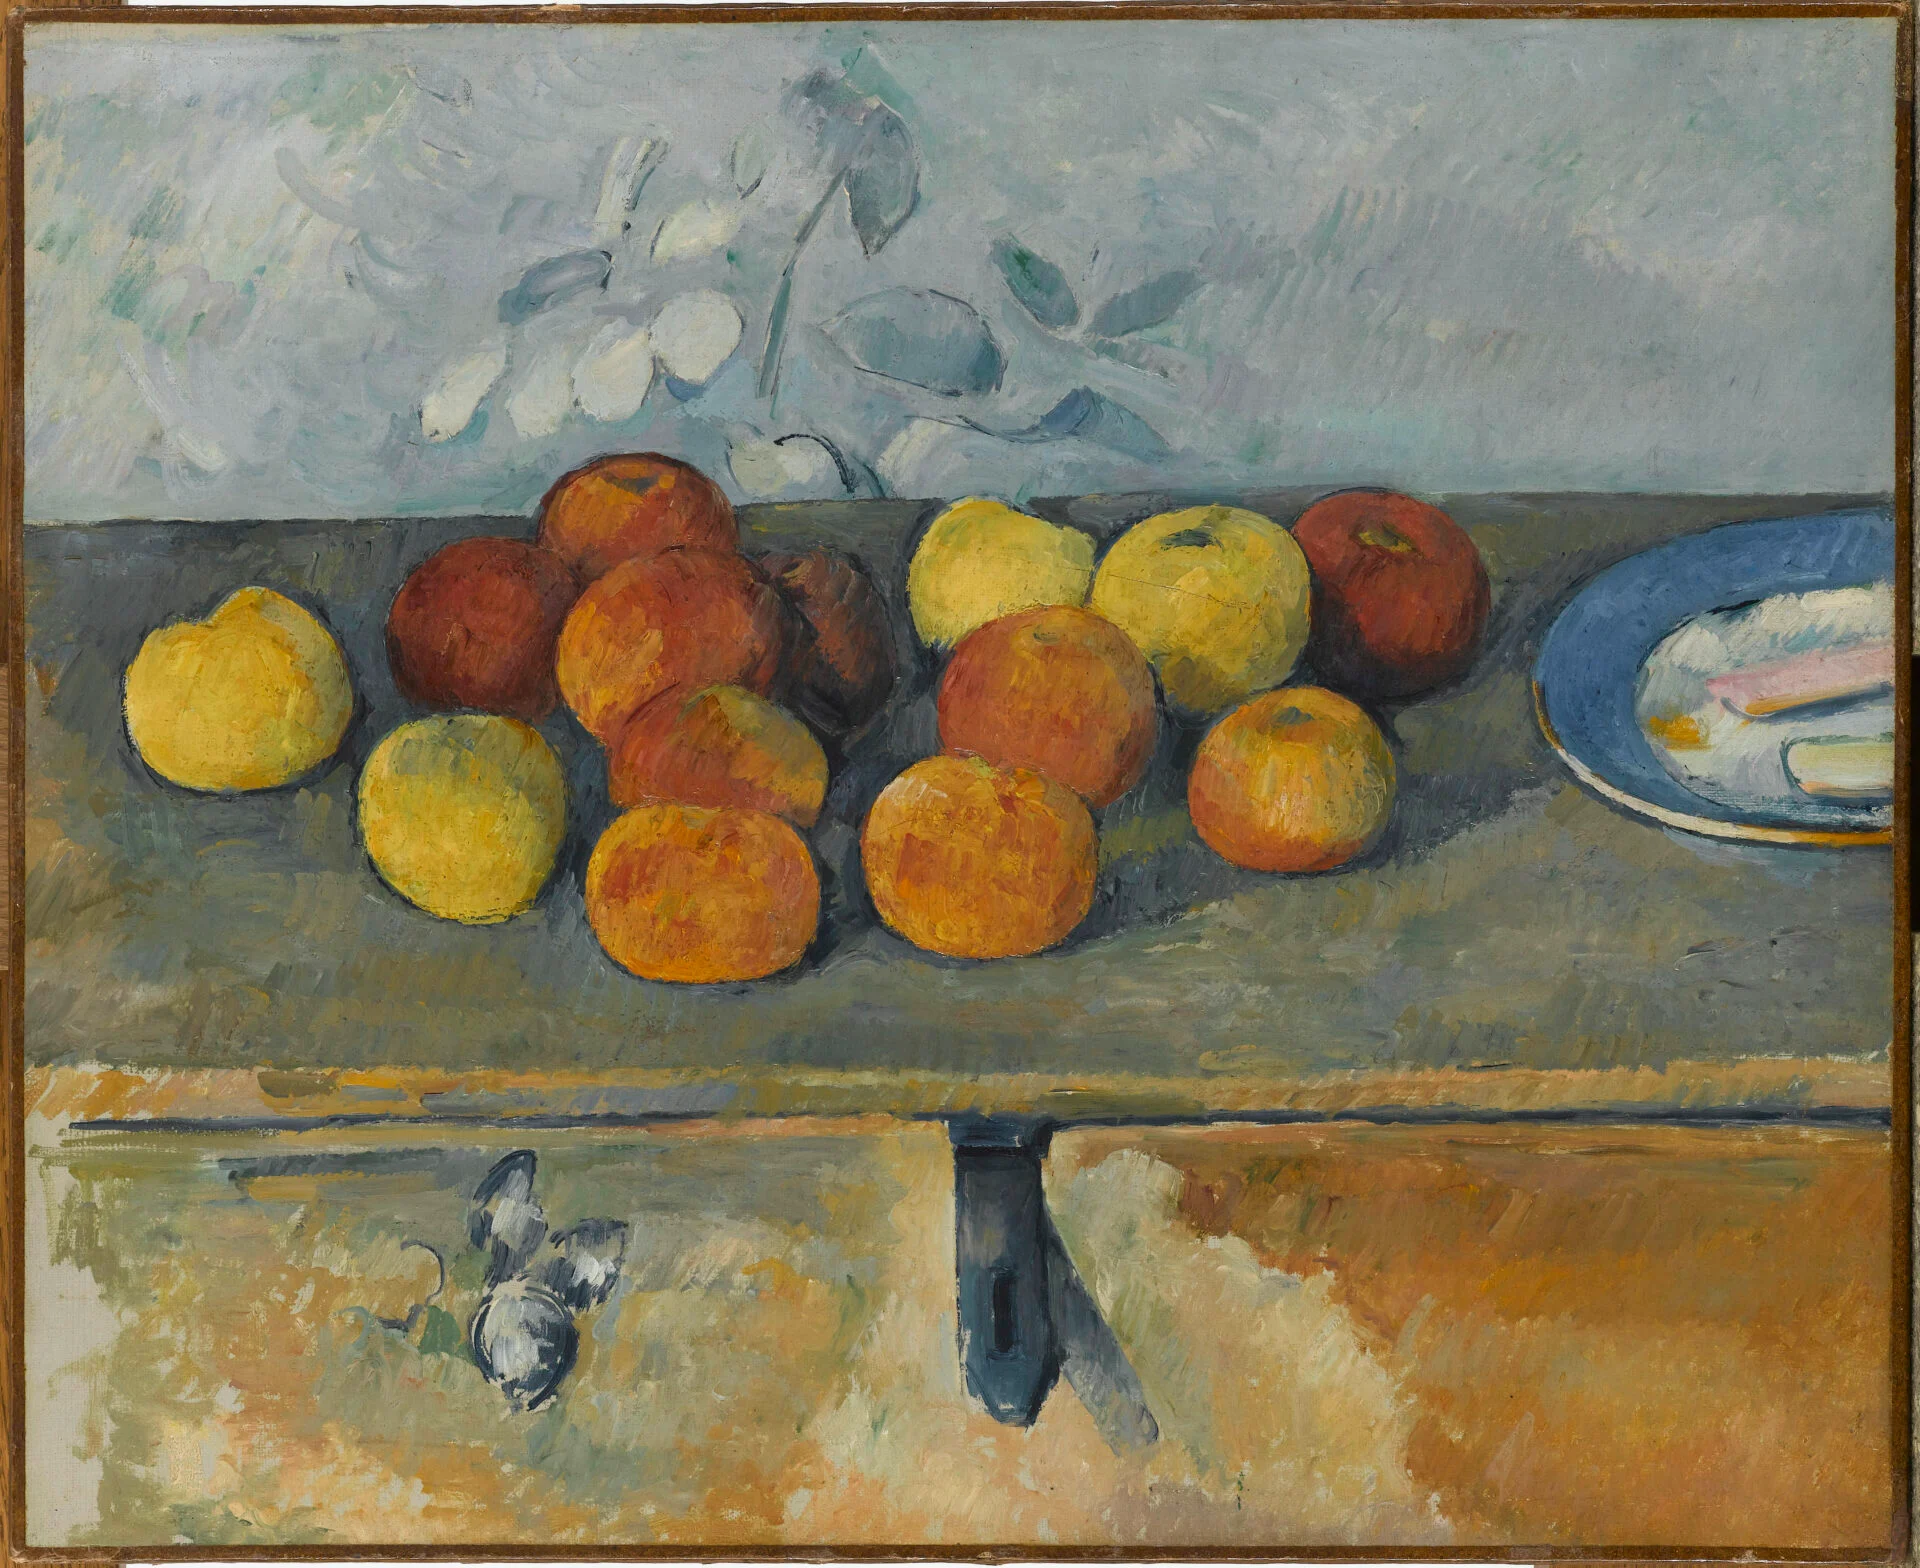 Visita alla mostra di Cézanne e Renoir a Palazzo reale.